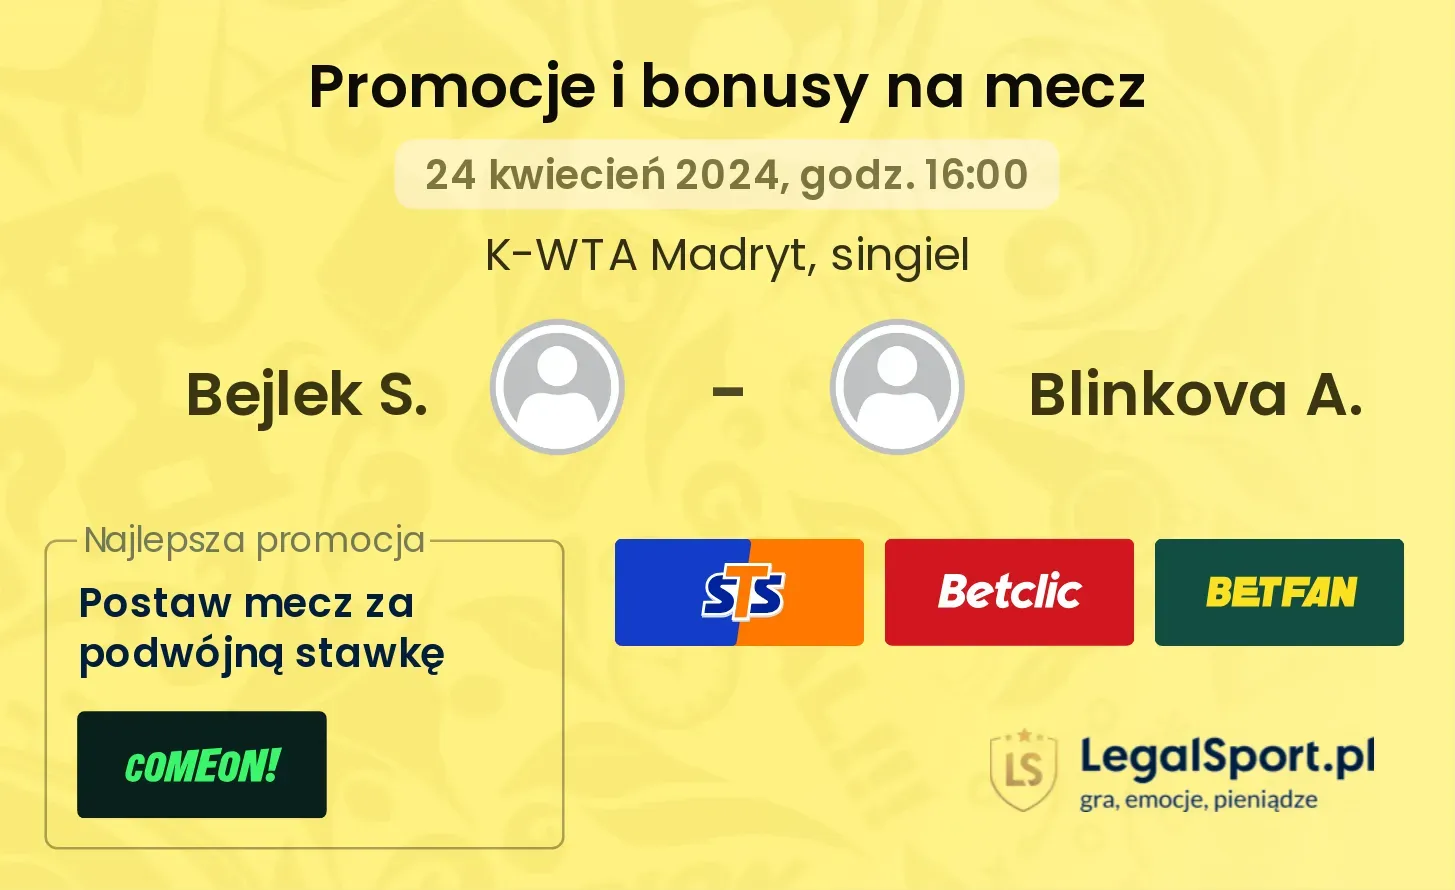 Bejlek S. - Blinkova A. promocje bonusy na mecz